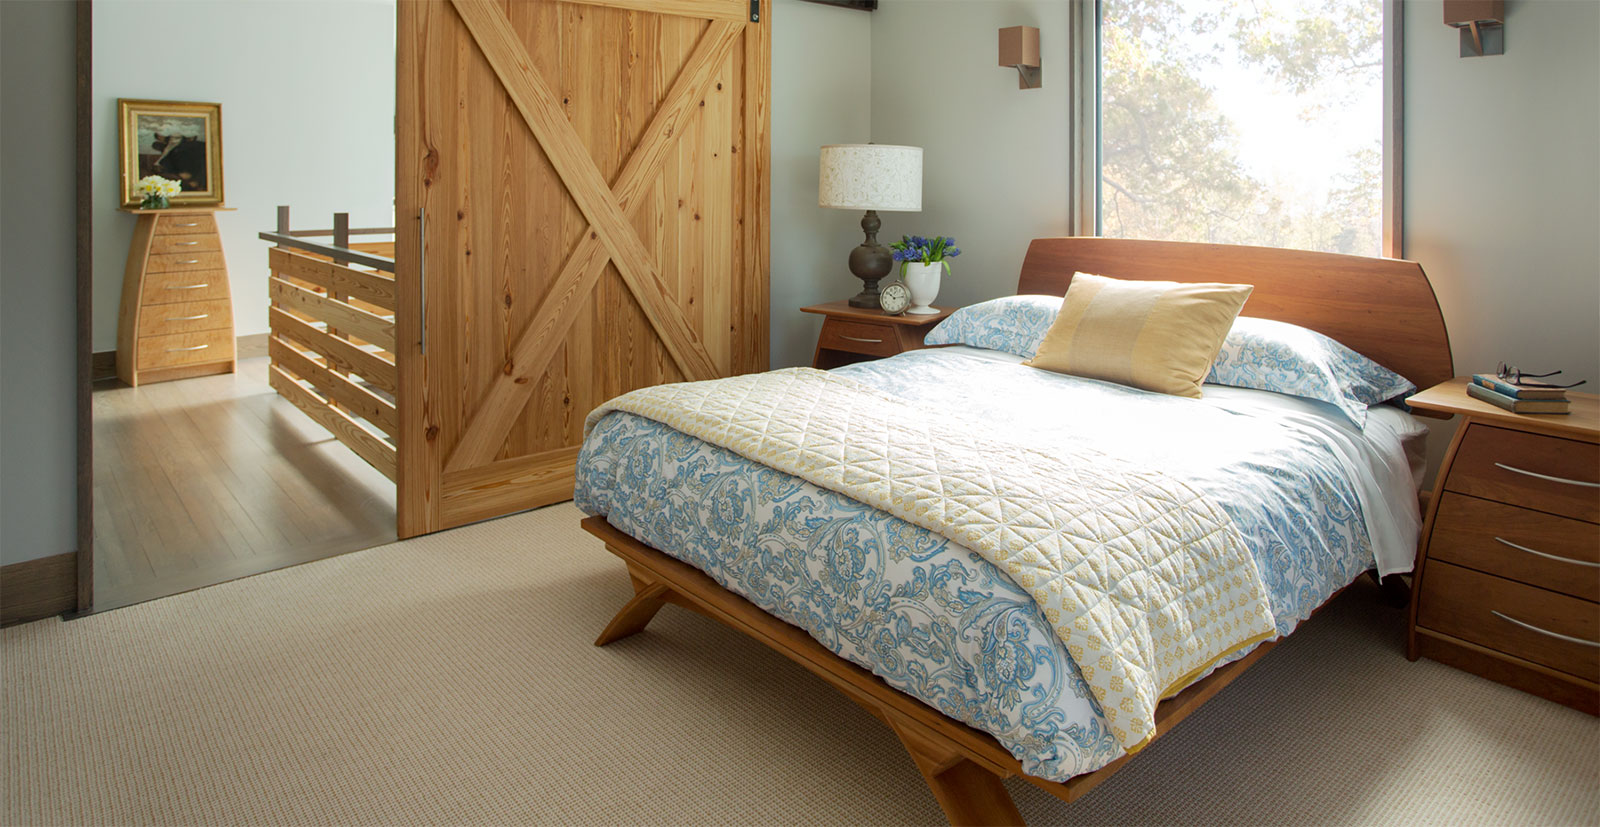 bed in modern bedroom with sliding barn door